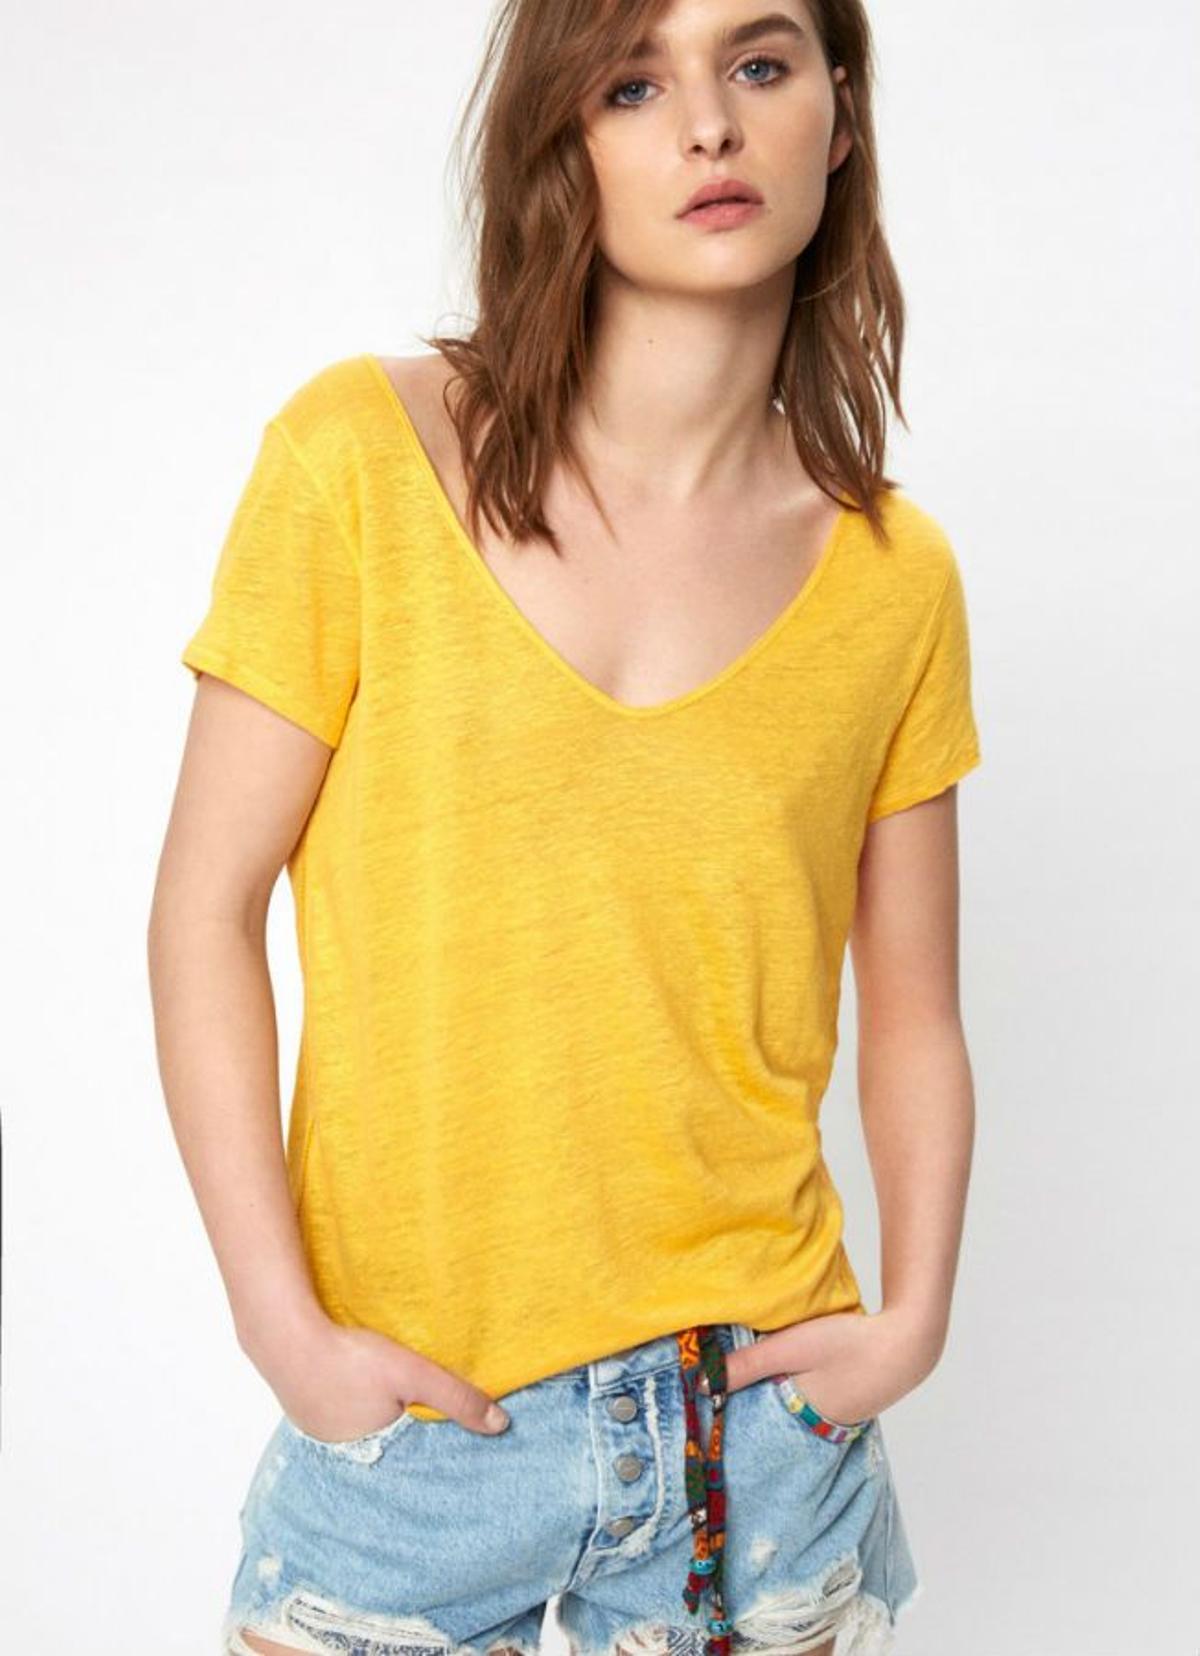 Prendas y complementos en amarillo:  camiseta de Pepe jeans